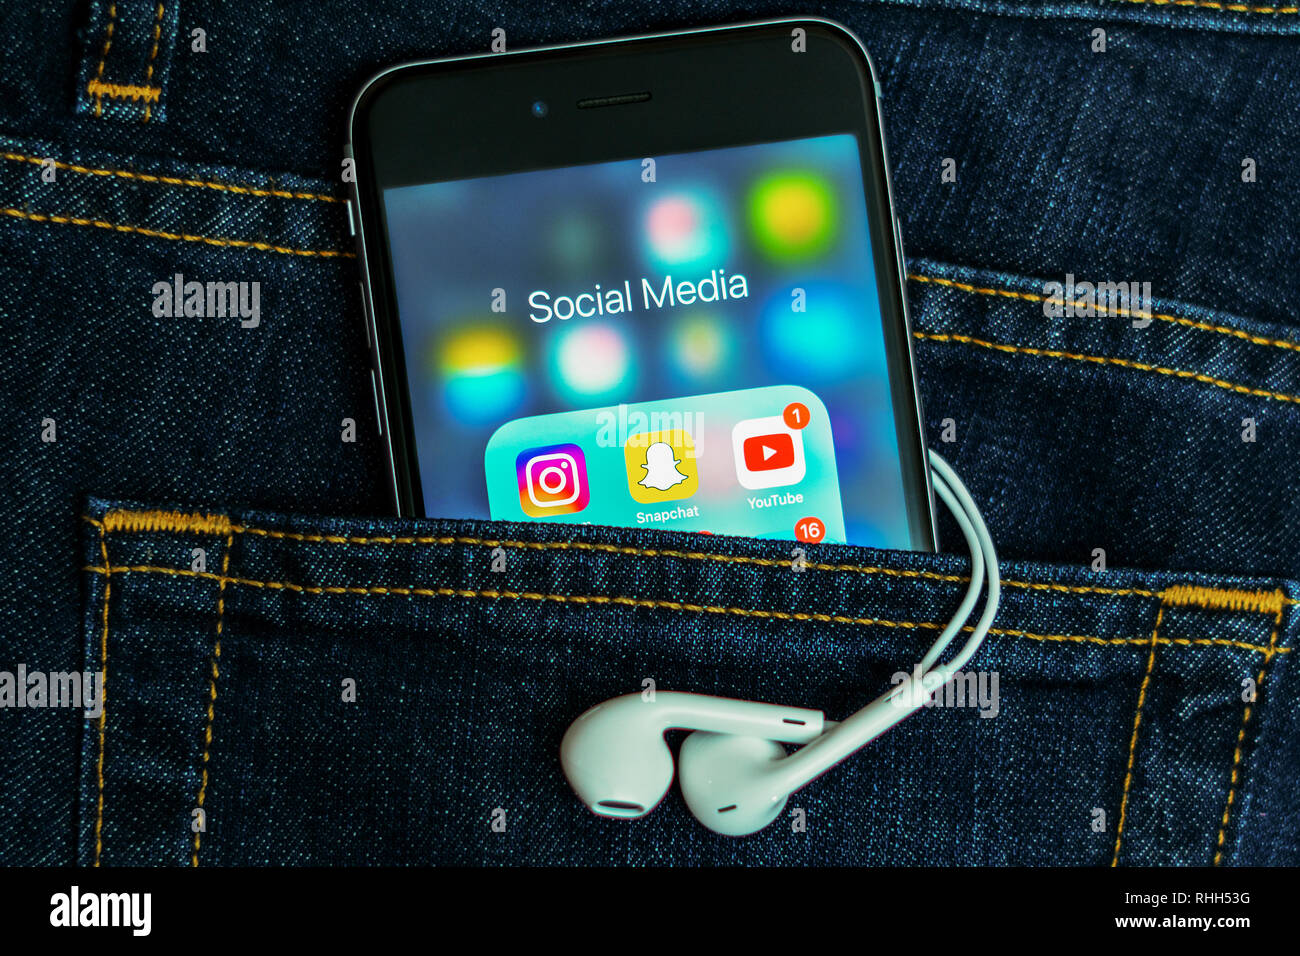 IPhone mit Symbolen der sozialen Medien: Instagram, Youtube, Studivz, Facebook, Twitter, snapchat auf dem Bildschirm. Social media Icons. Denim Jeans Hintergrund Stockfoto